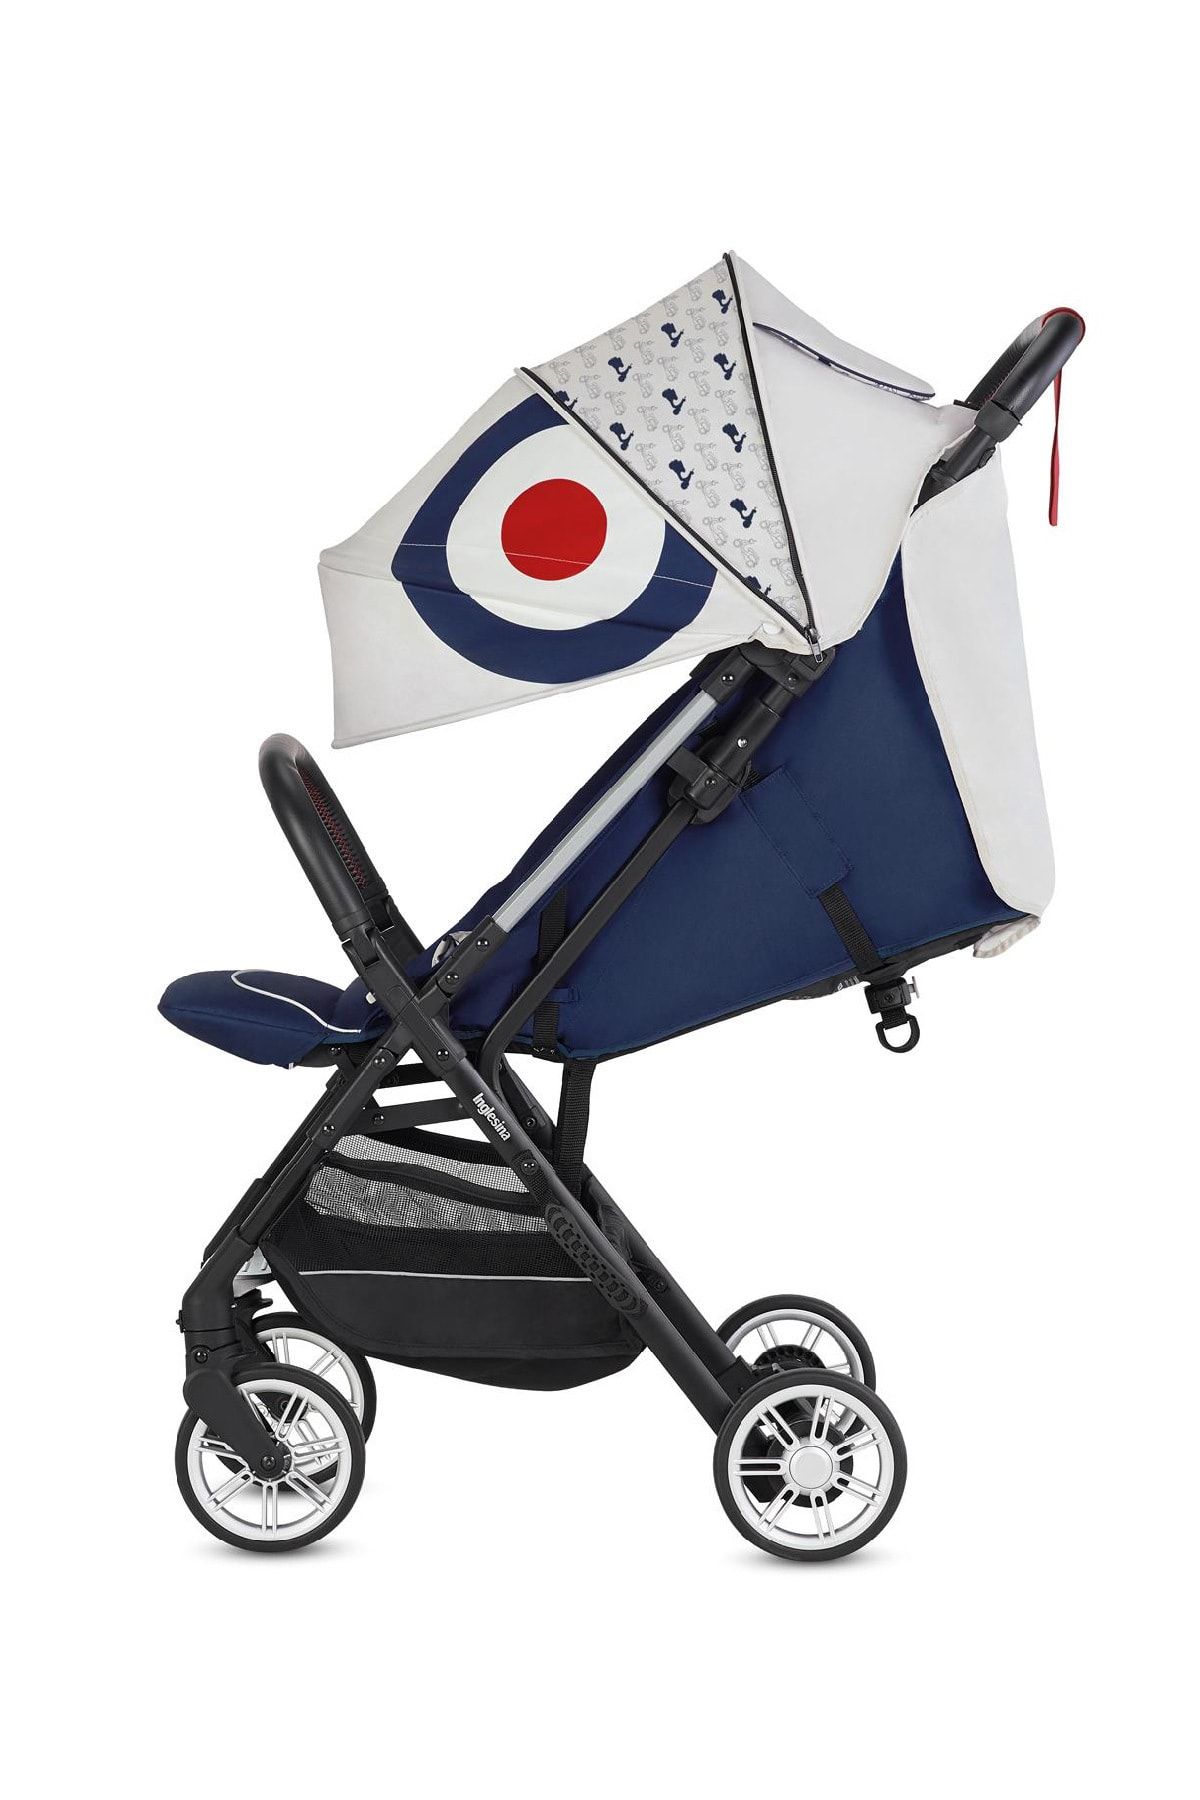 Inglesina Quid 2 Bebek Arabası (Puset) En Ucuz Fiyat ve Özellikleri - Epey